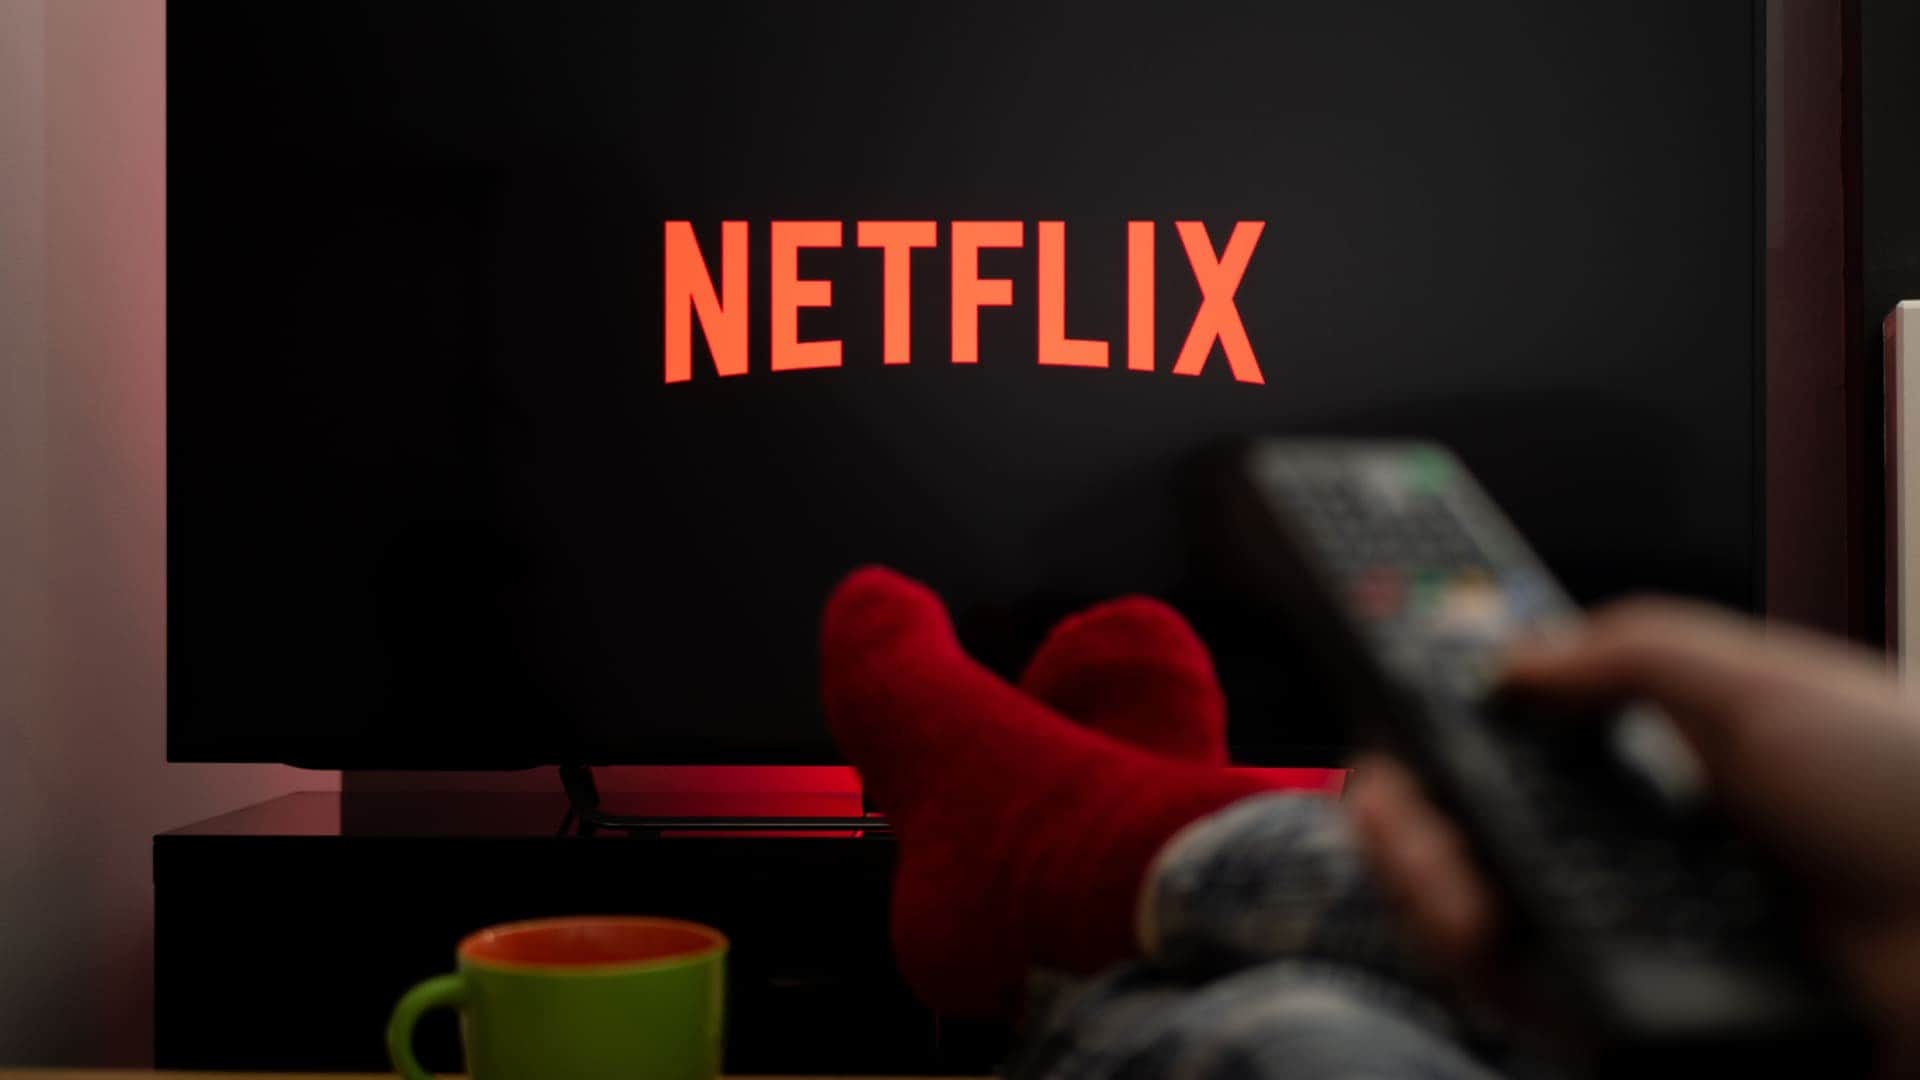 Netflix cancela plano básico no Brasil e aumenta preços nos EUA; entenda